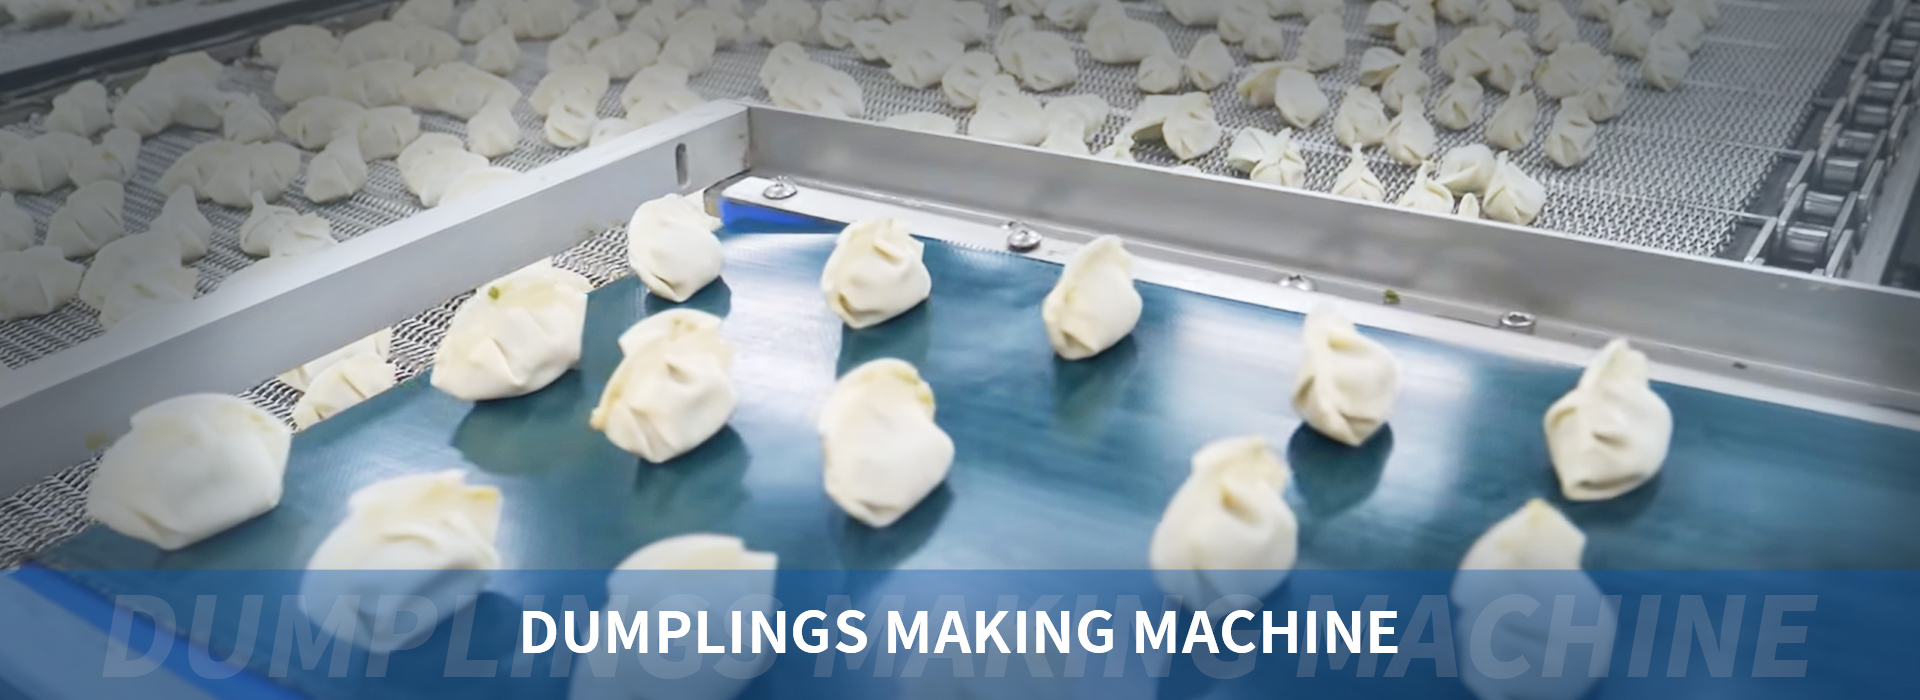 Dumplings Production Solutions For Dumpling Factory 